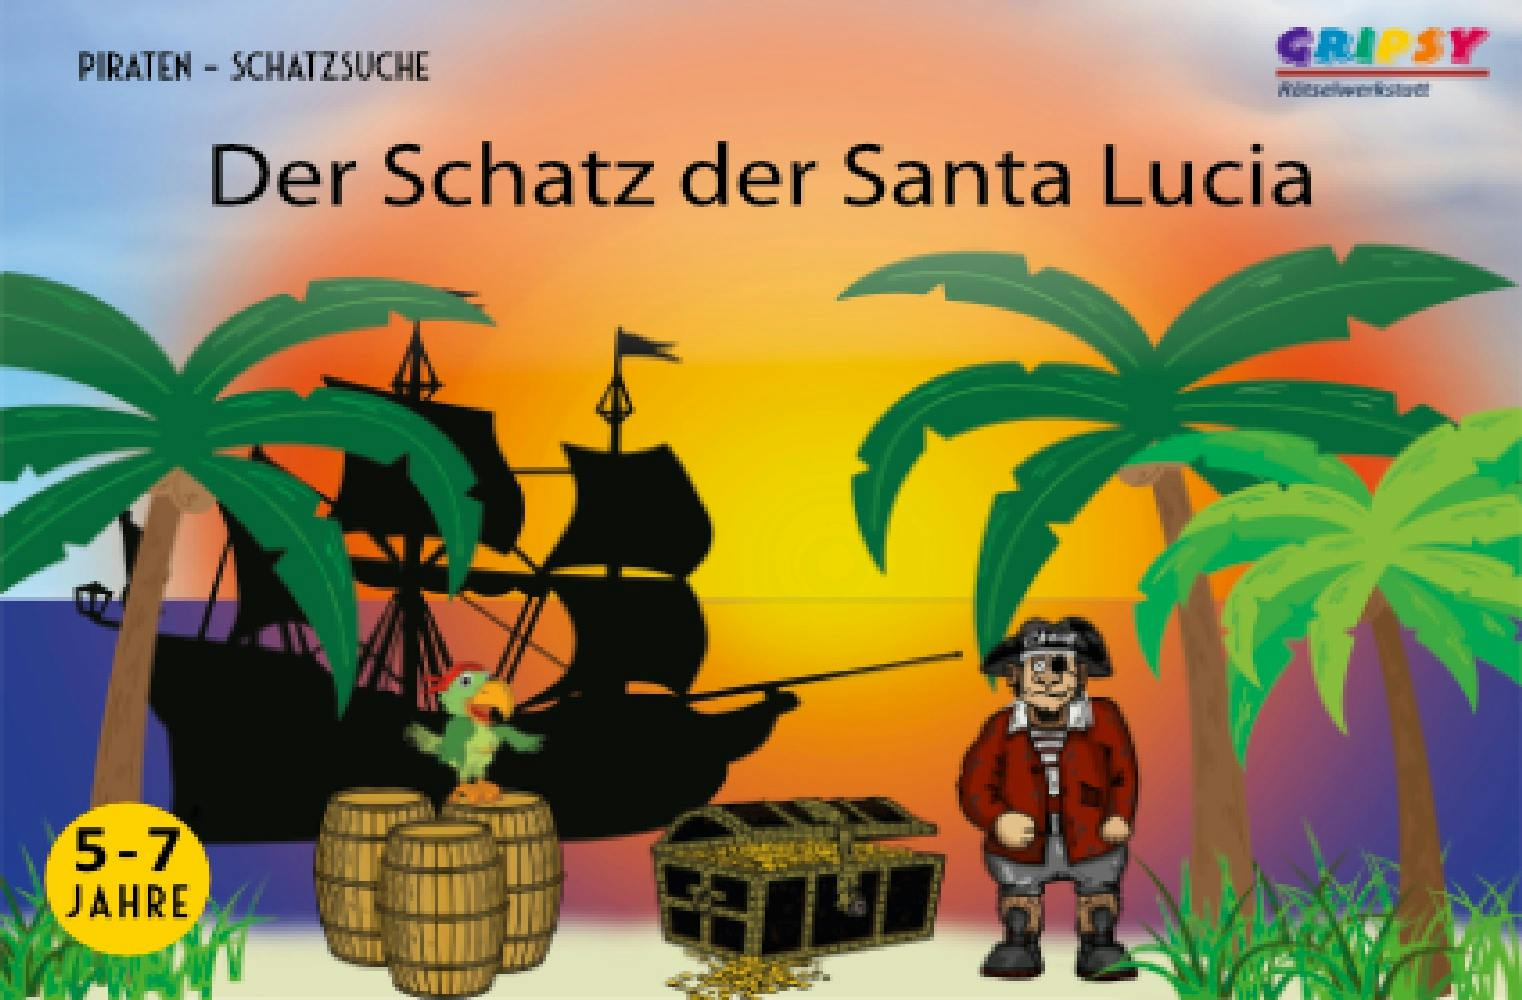 Der Schatz der Santa Lucia | Piraten Schatzsuche 5-7 Jahre